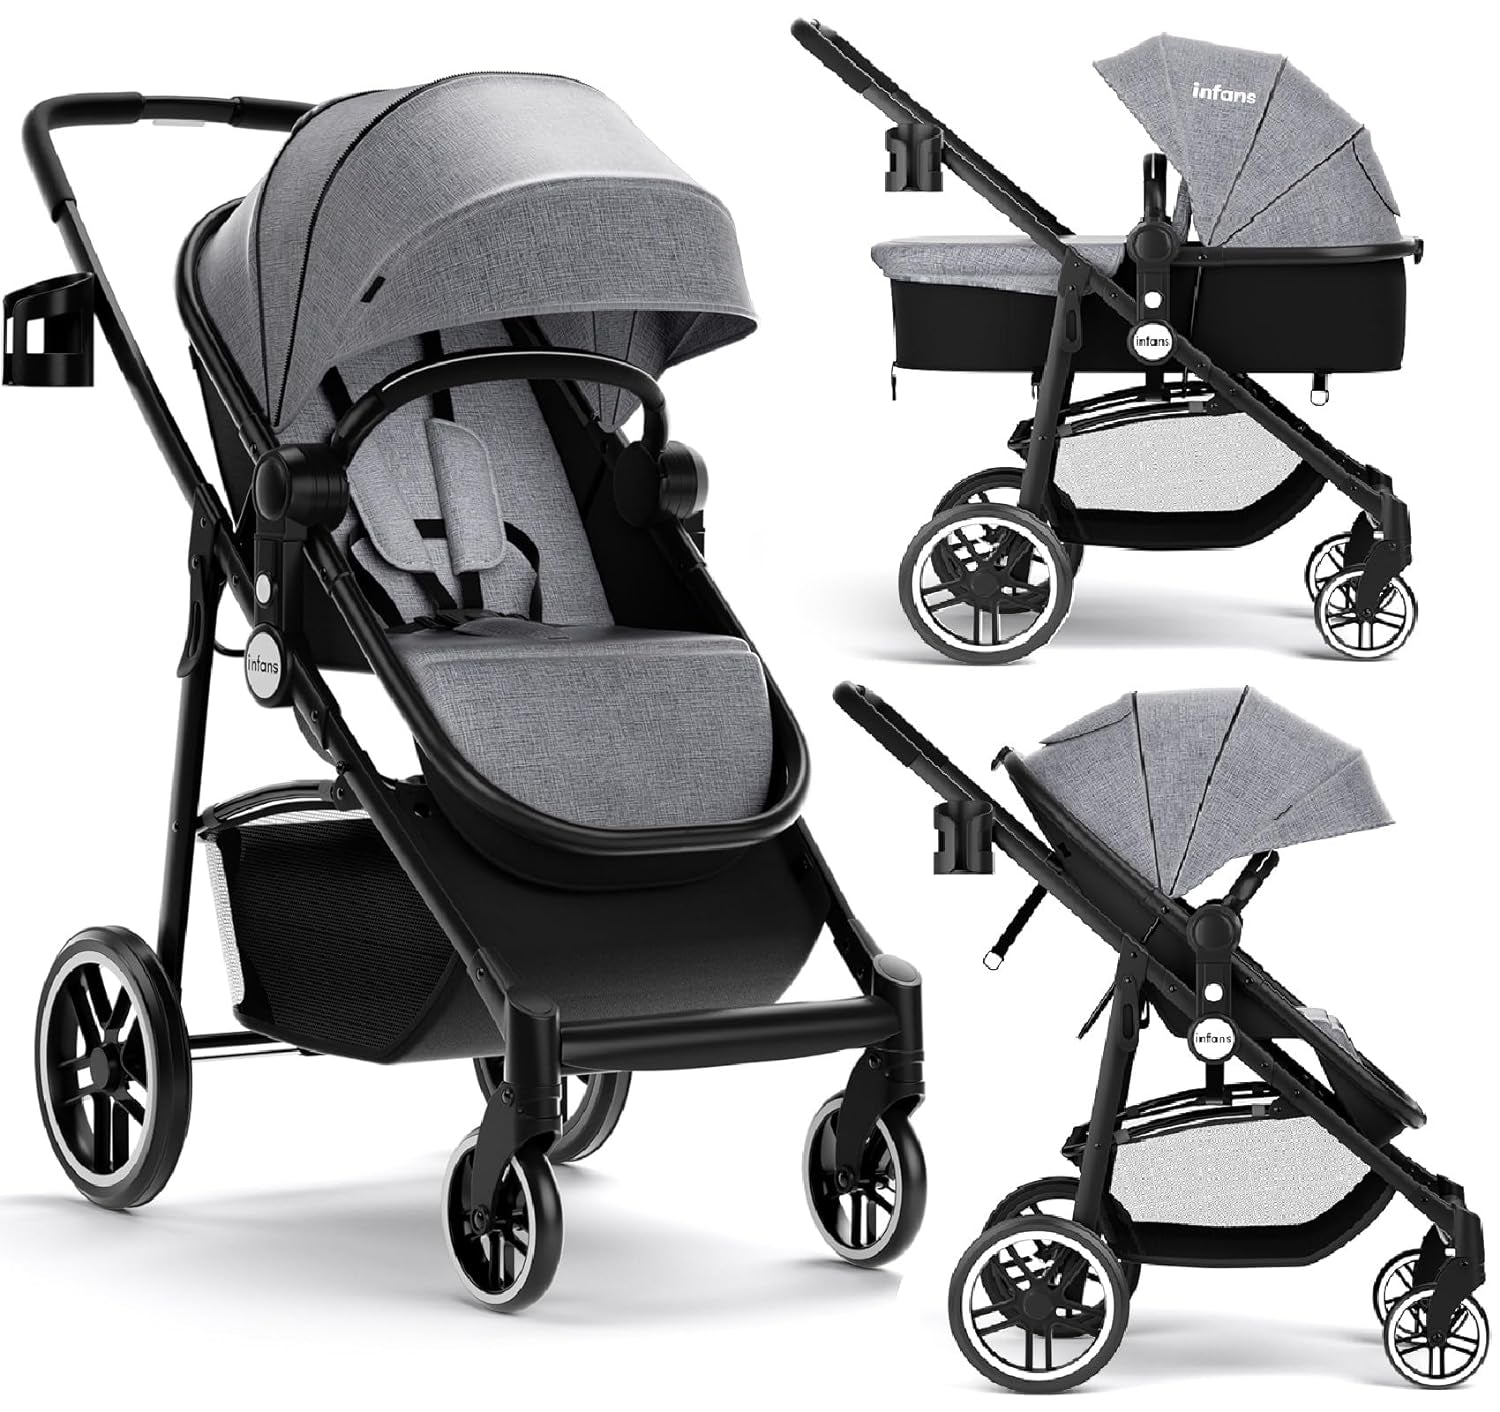 2 in 1 Baby Stroller, High Landscape Infant Stroller & Reversible Bassinet Pram, Foldable Pushchair with Adjustable Canopy, Cup Holder, Storage Basket, Suspension Wheels (Grey)